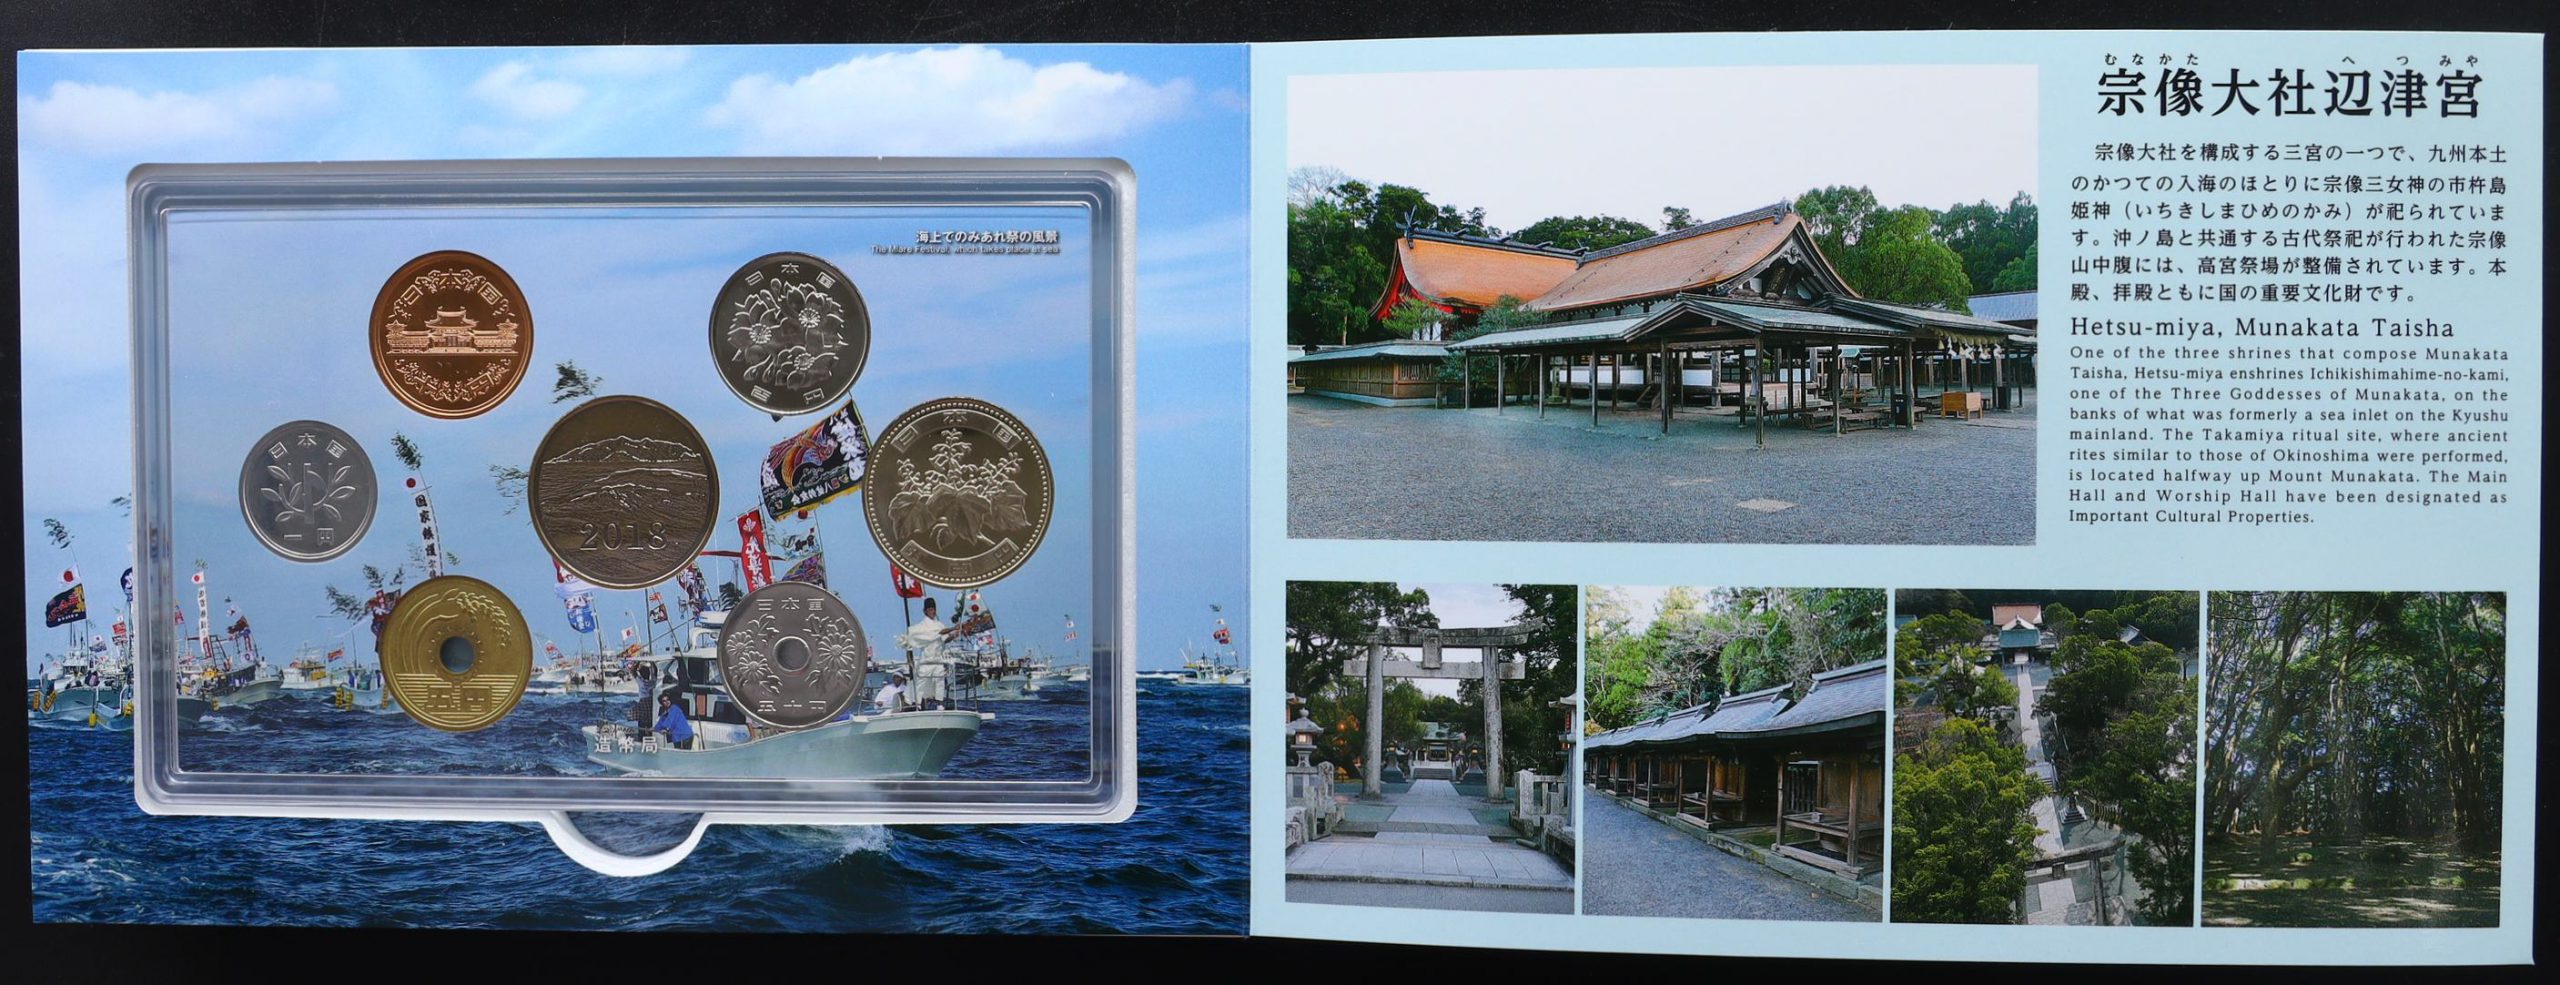 世界文化遺産 貨幣セット 「神宿る島」宗像・沖ノ島と関連遺産群 平成